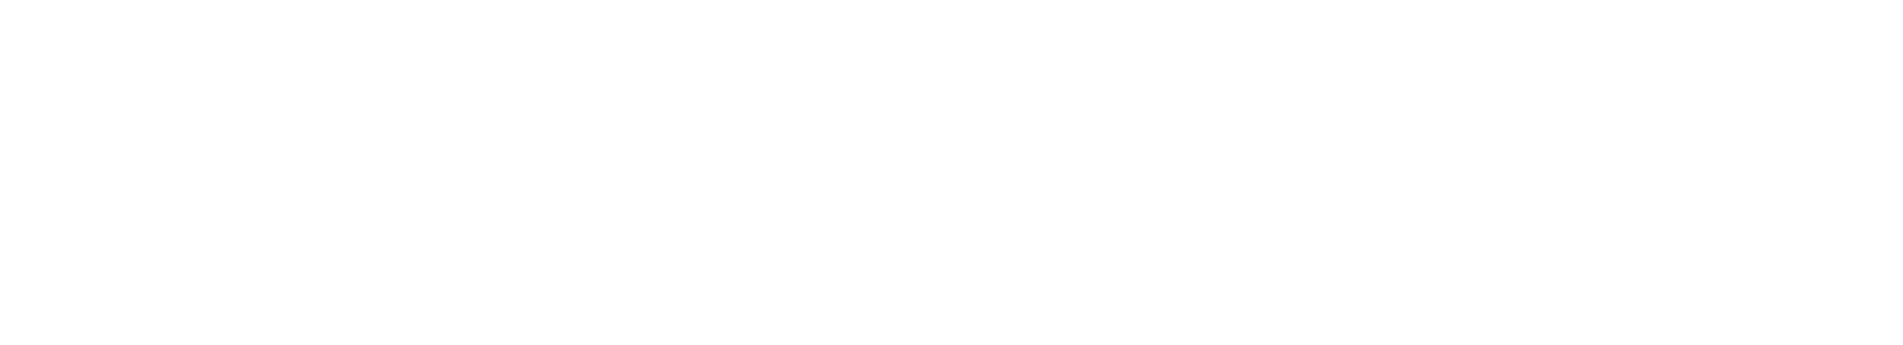 white-slide-bottom-curv-shape